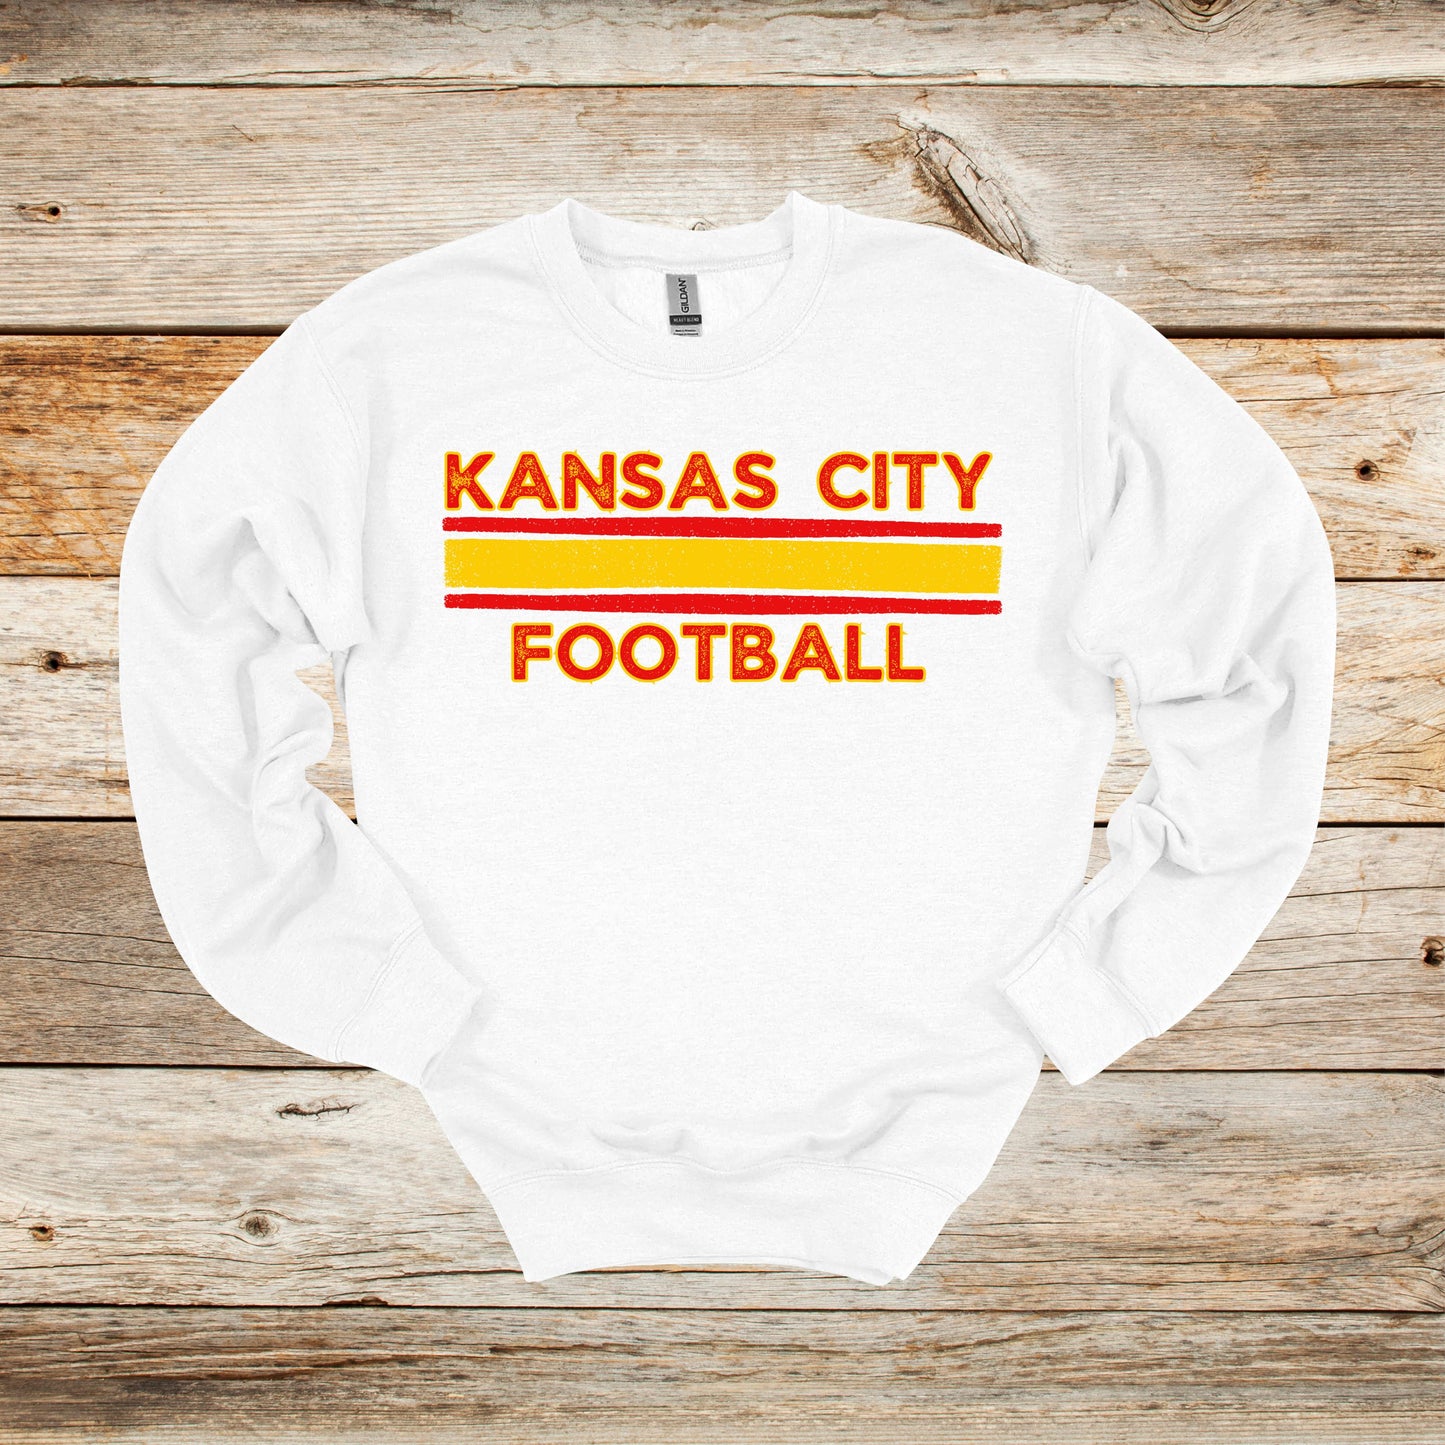 Football Crewneck and Hooded Sweatshirt - Kansas City Chiefs - Kansas City Football - Adult and Children's Tee Shirts - Sports Hooded Sweatshirt Graphic Avenue Crewneck Sweatshirt White Adult Small